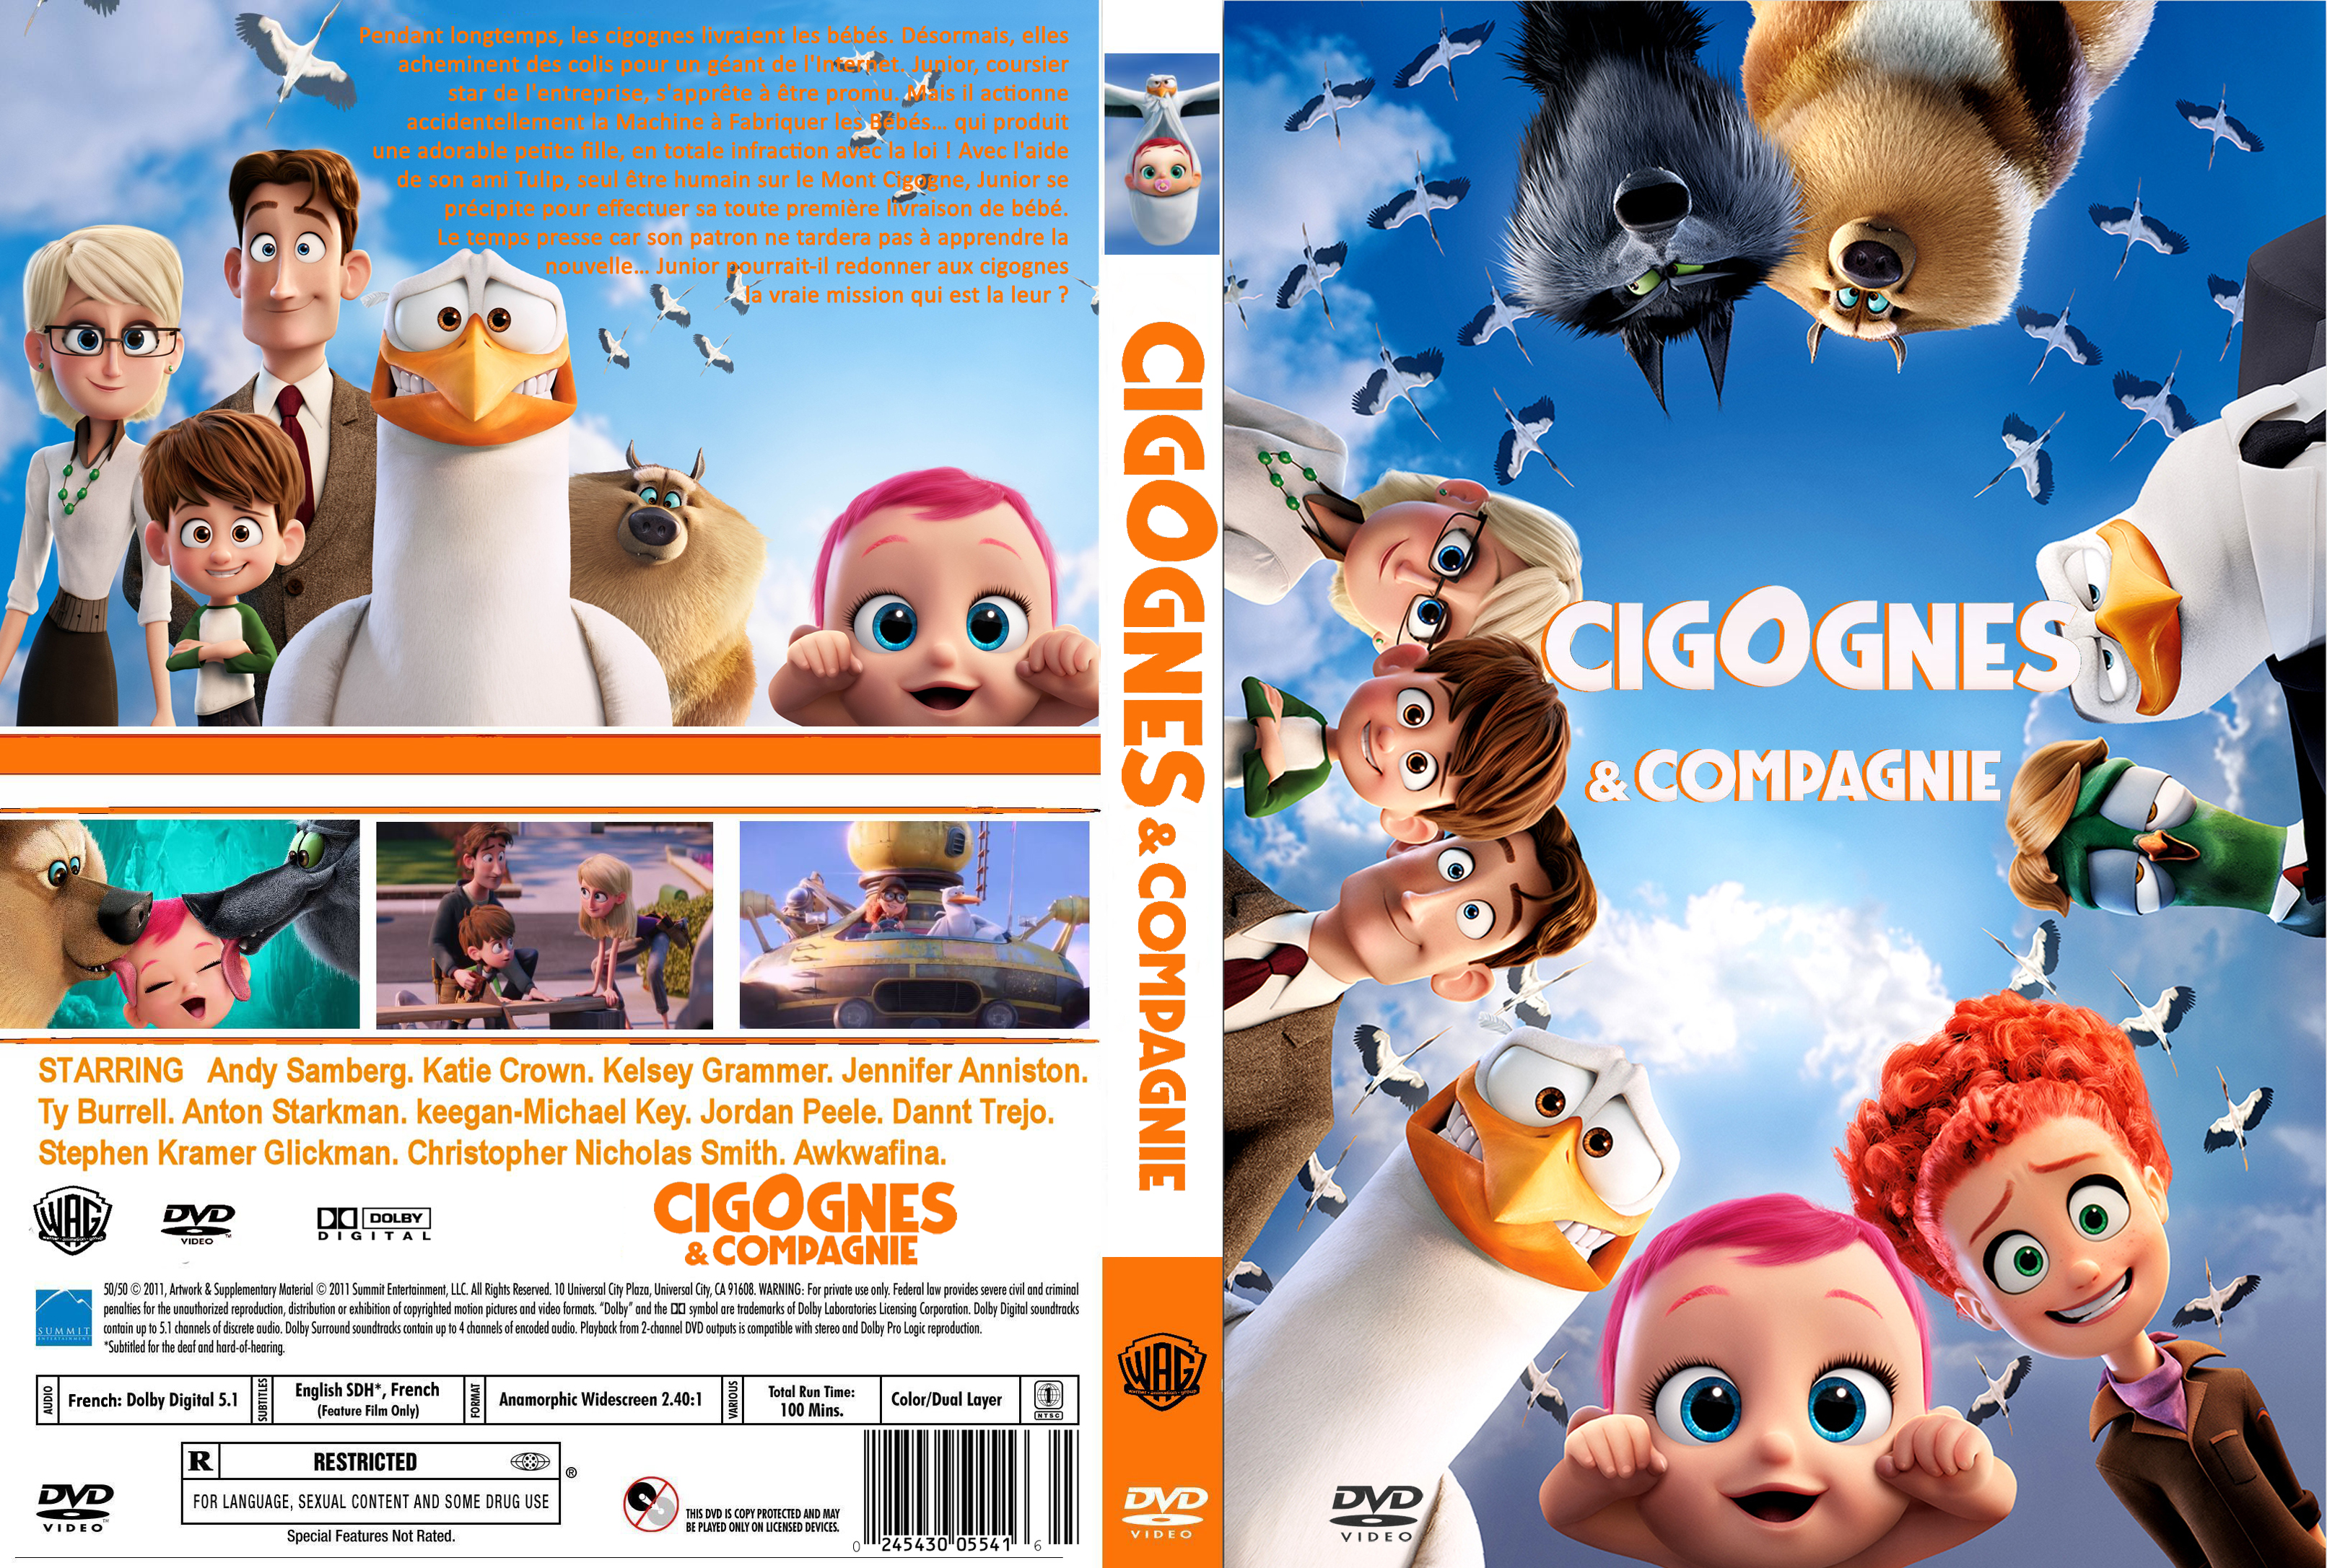 Jaquette DVD Cigognes et compagnie custom